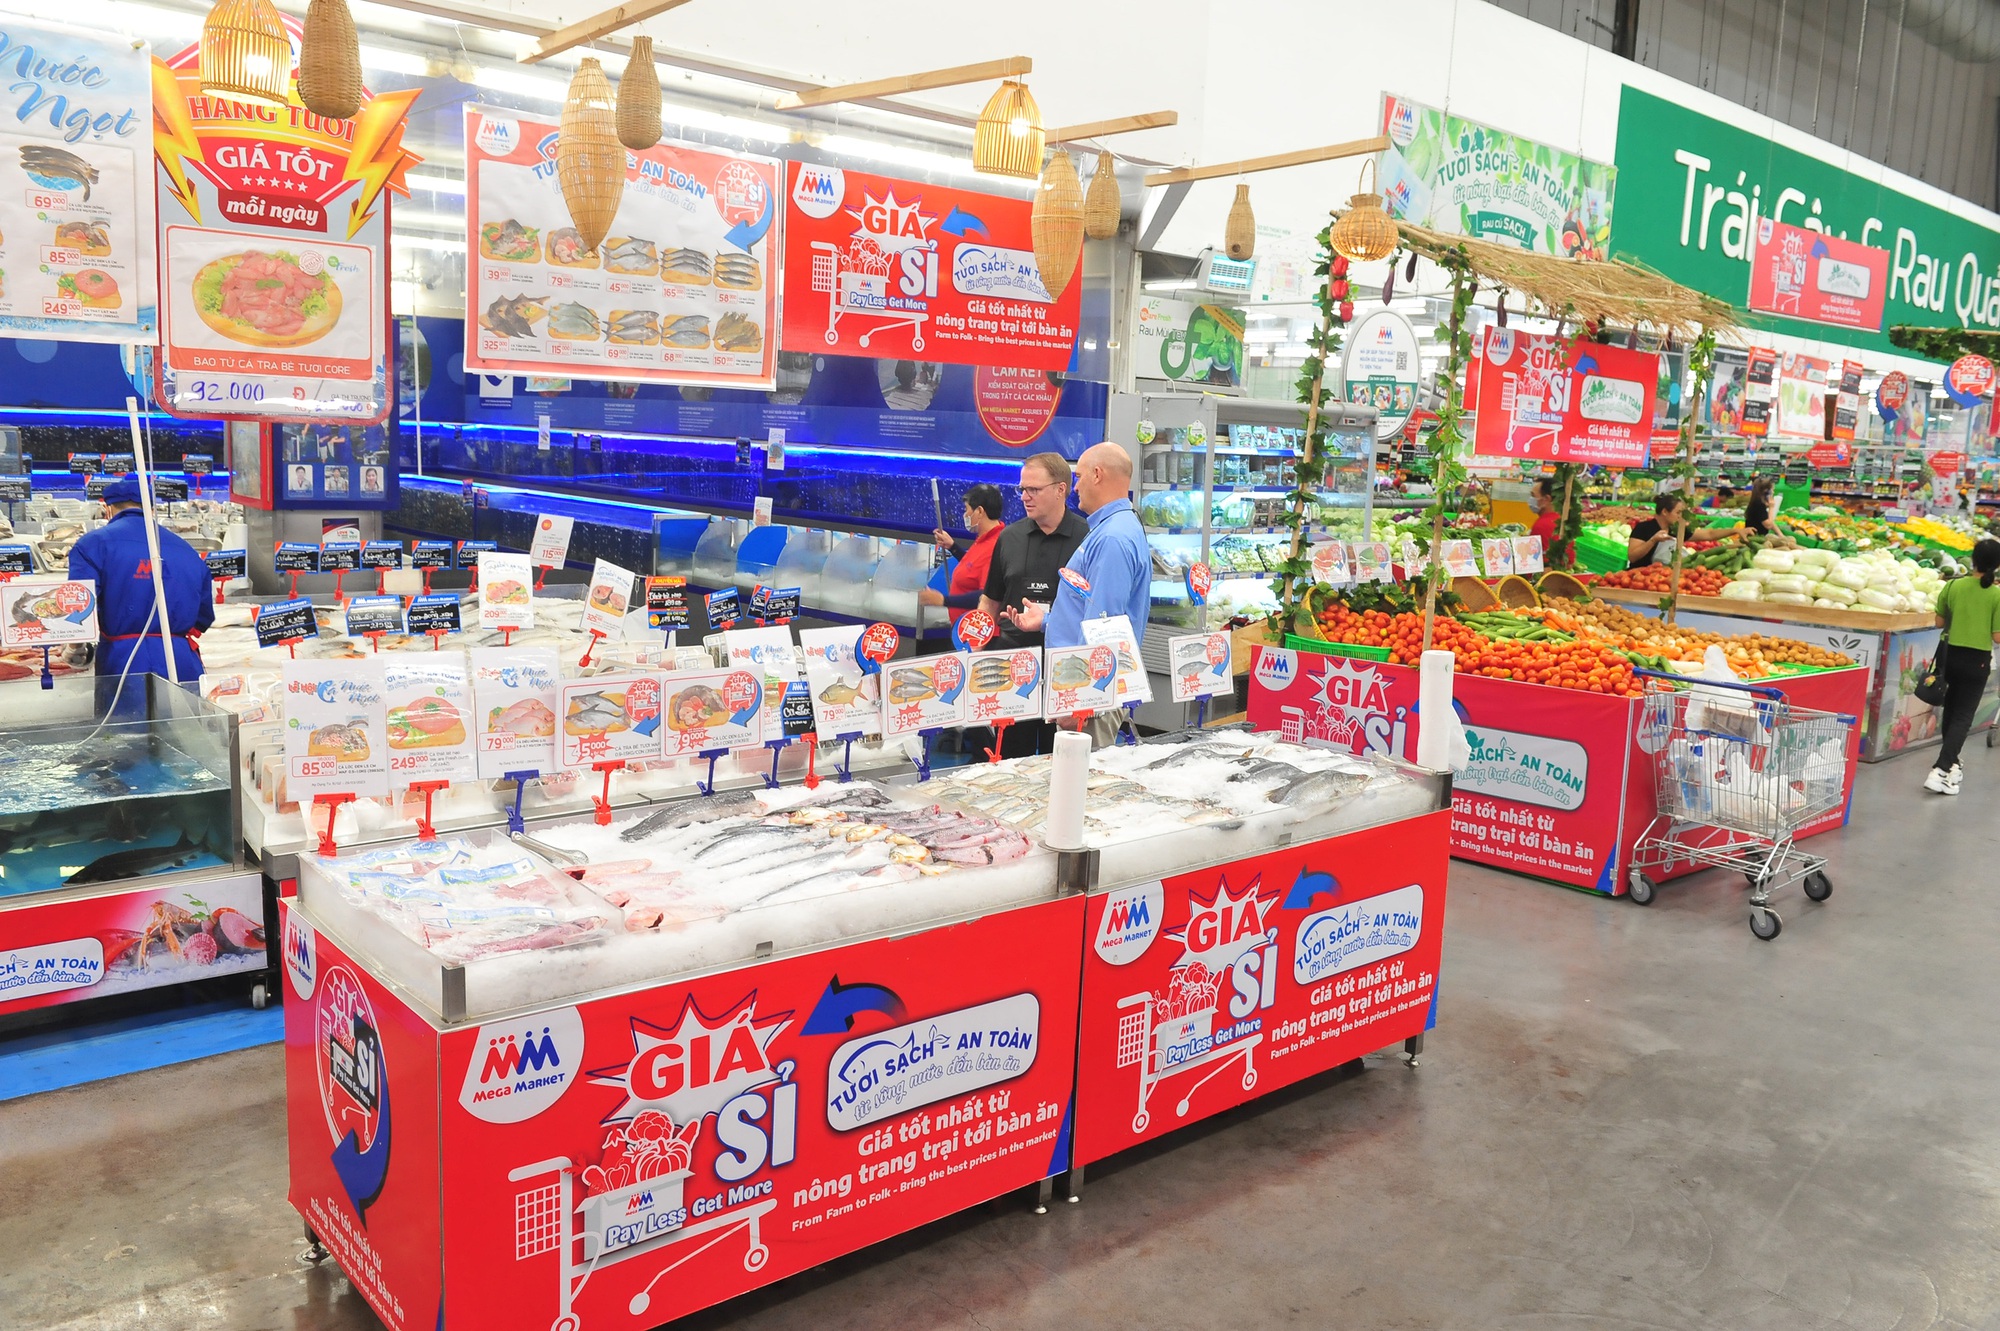 Một siêu thị lớn triển khai 2 chiến dịch về giá lớn nhất năm, rau củ, hải sản giá &quot;mềm&quot; như chợ đầu mối - Ảnh 1.